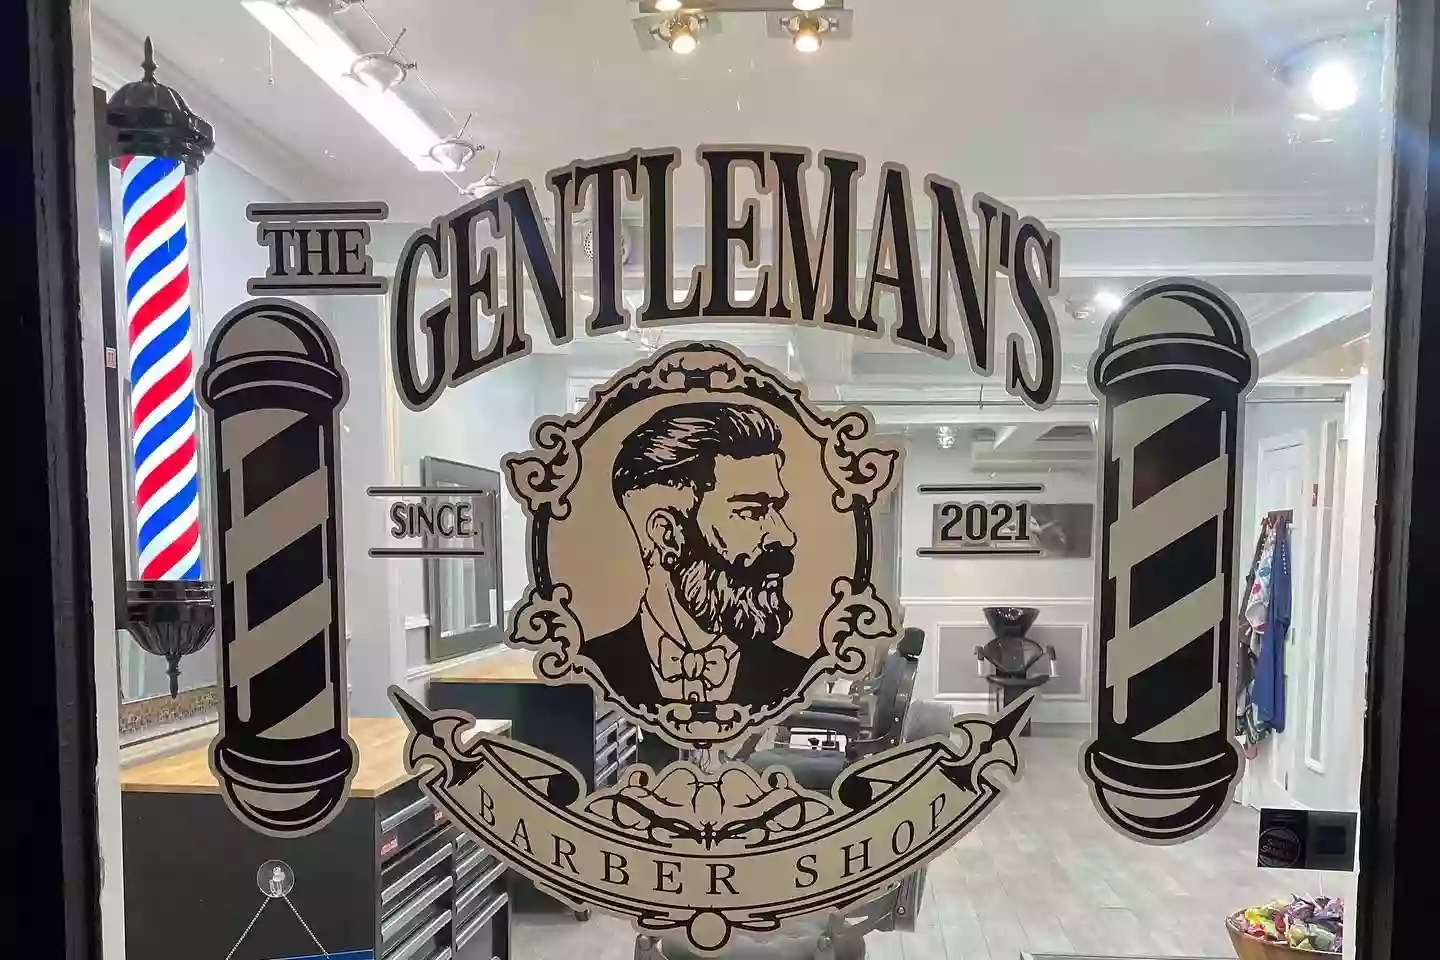 The gentleman’s barbershop